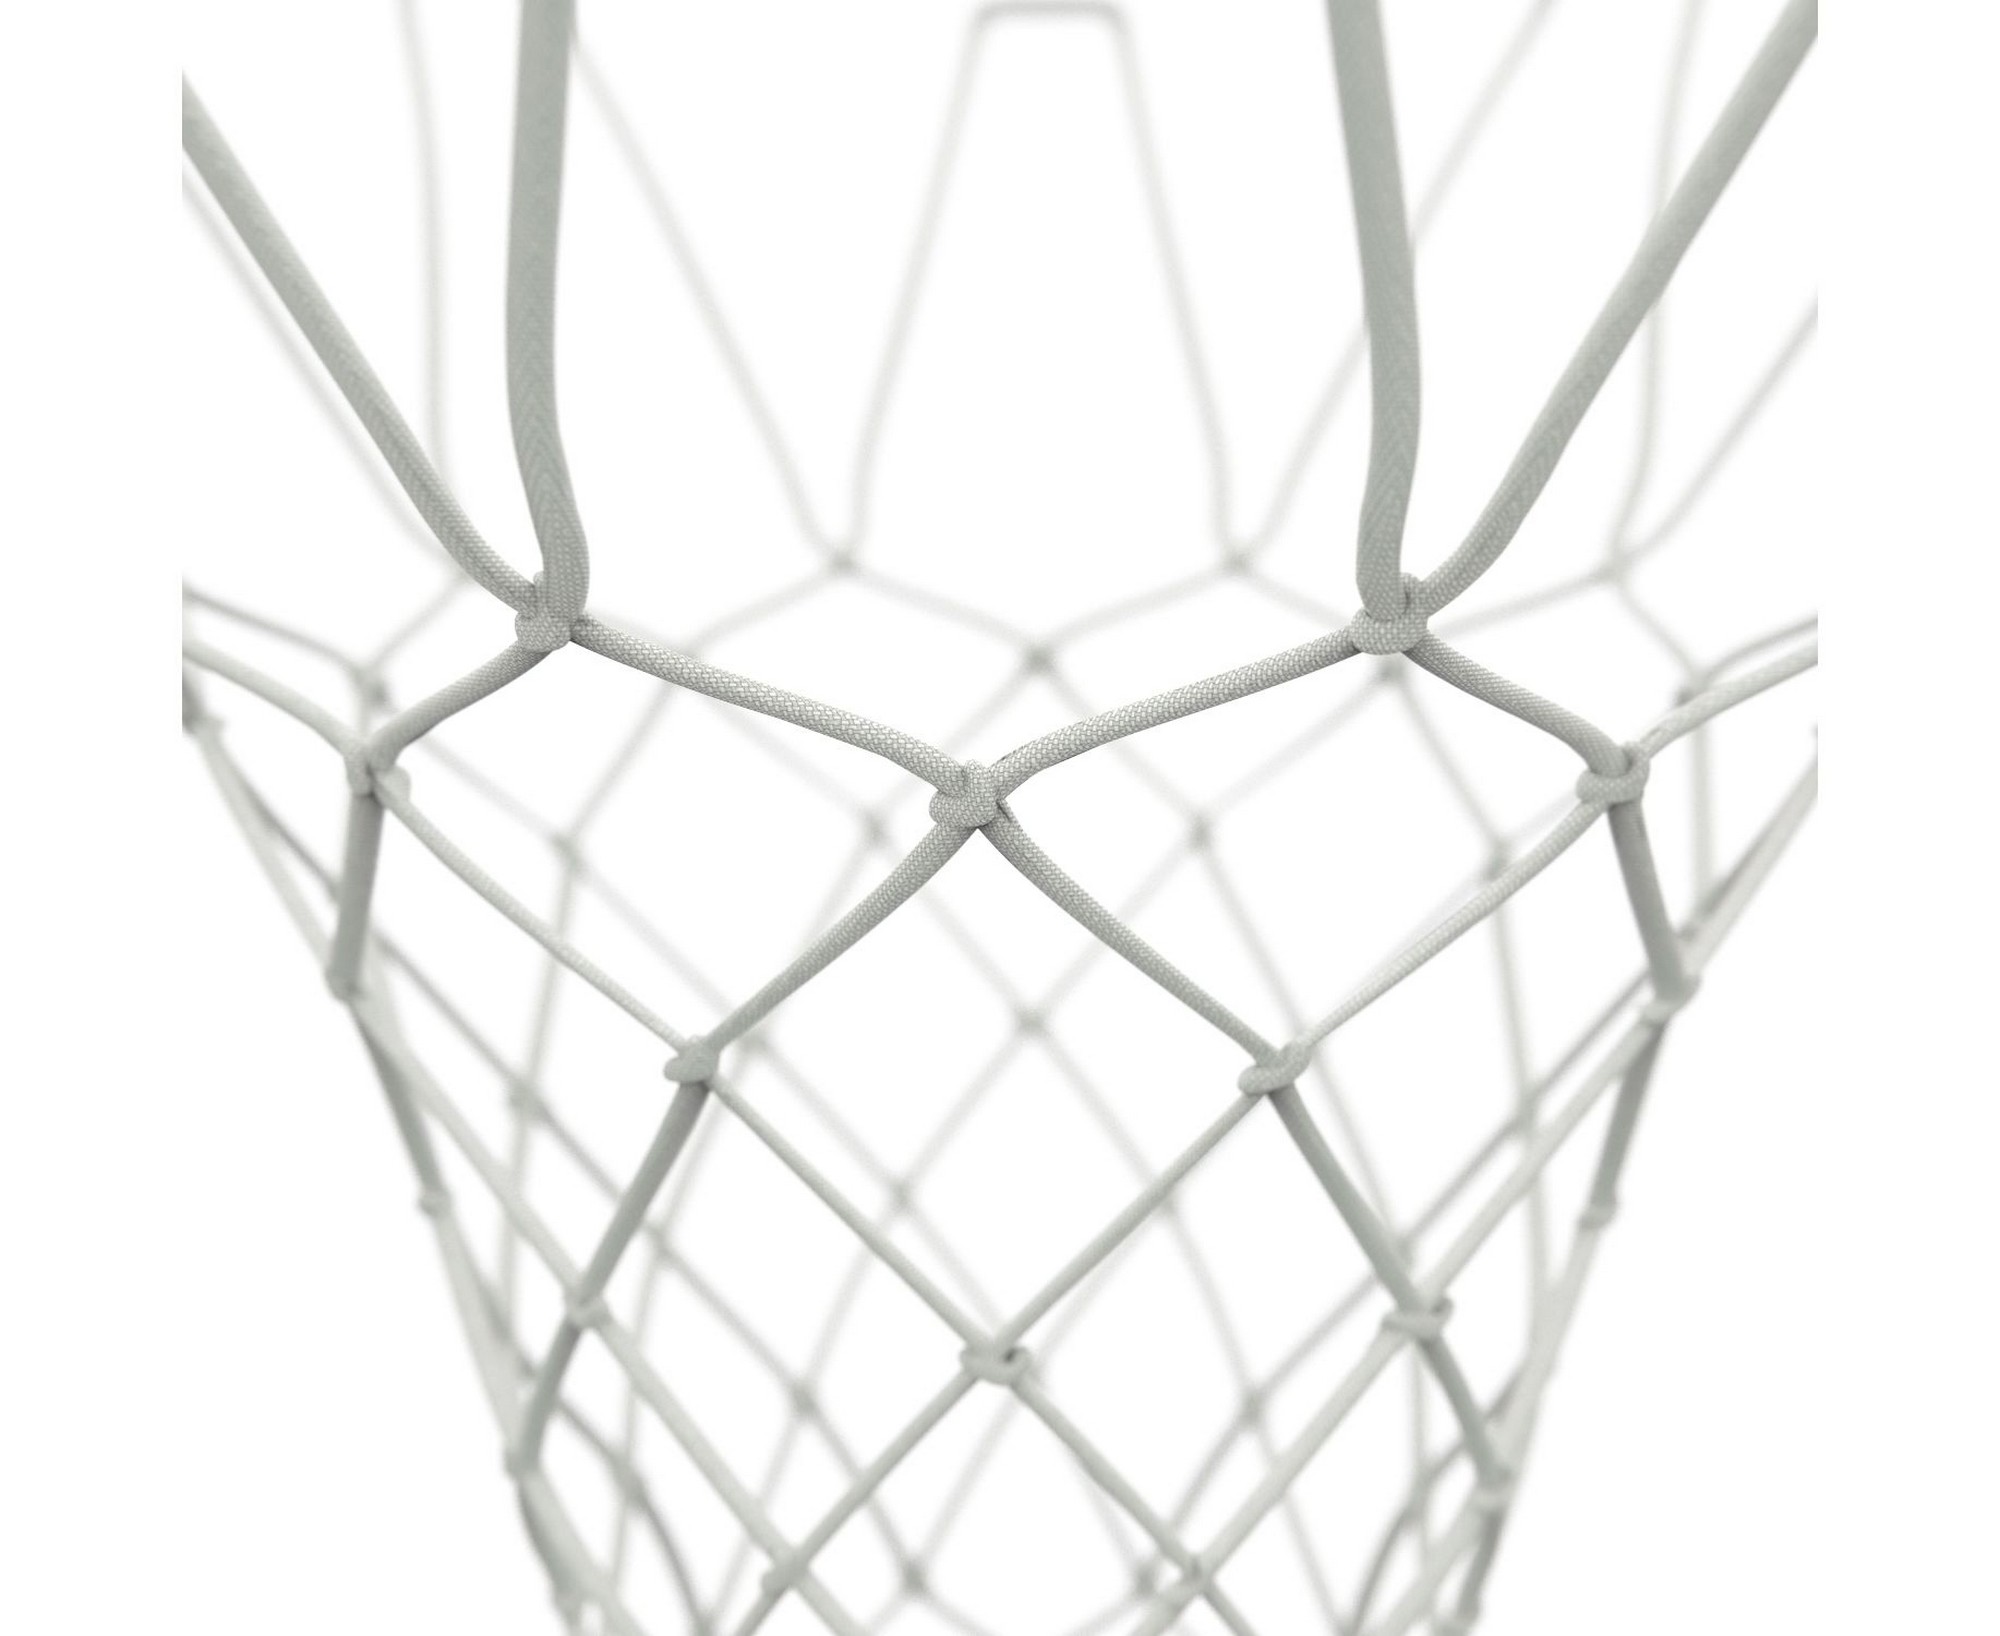 Сетка для баскетбольного кольца DFC N-P2 2000_1636